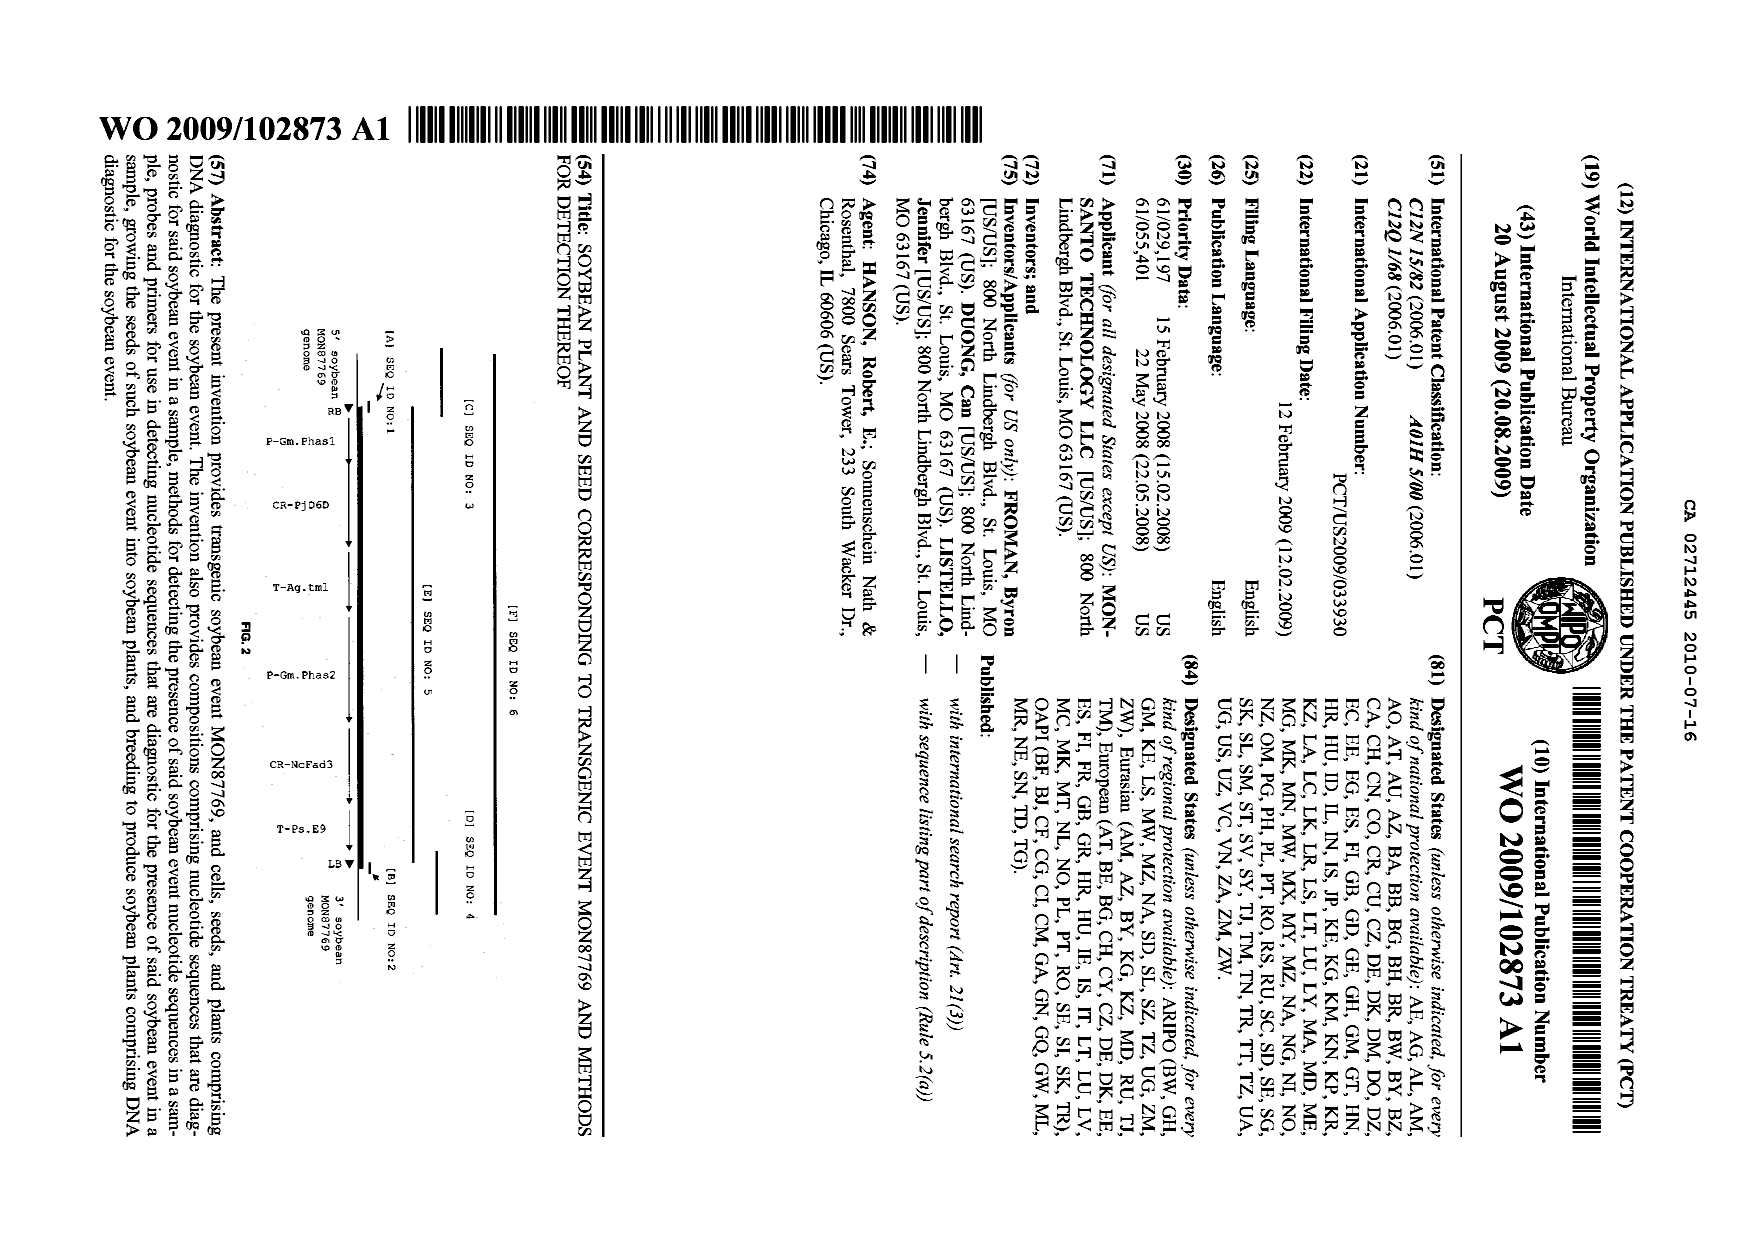 Document de brevet canadien 2712445. Abrégé 20091216. Image 1 de 1